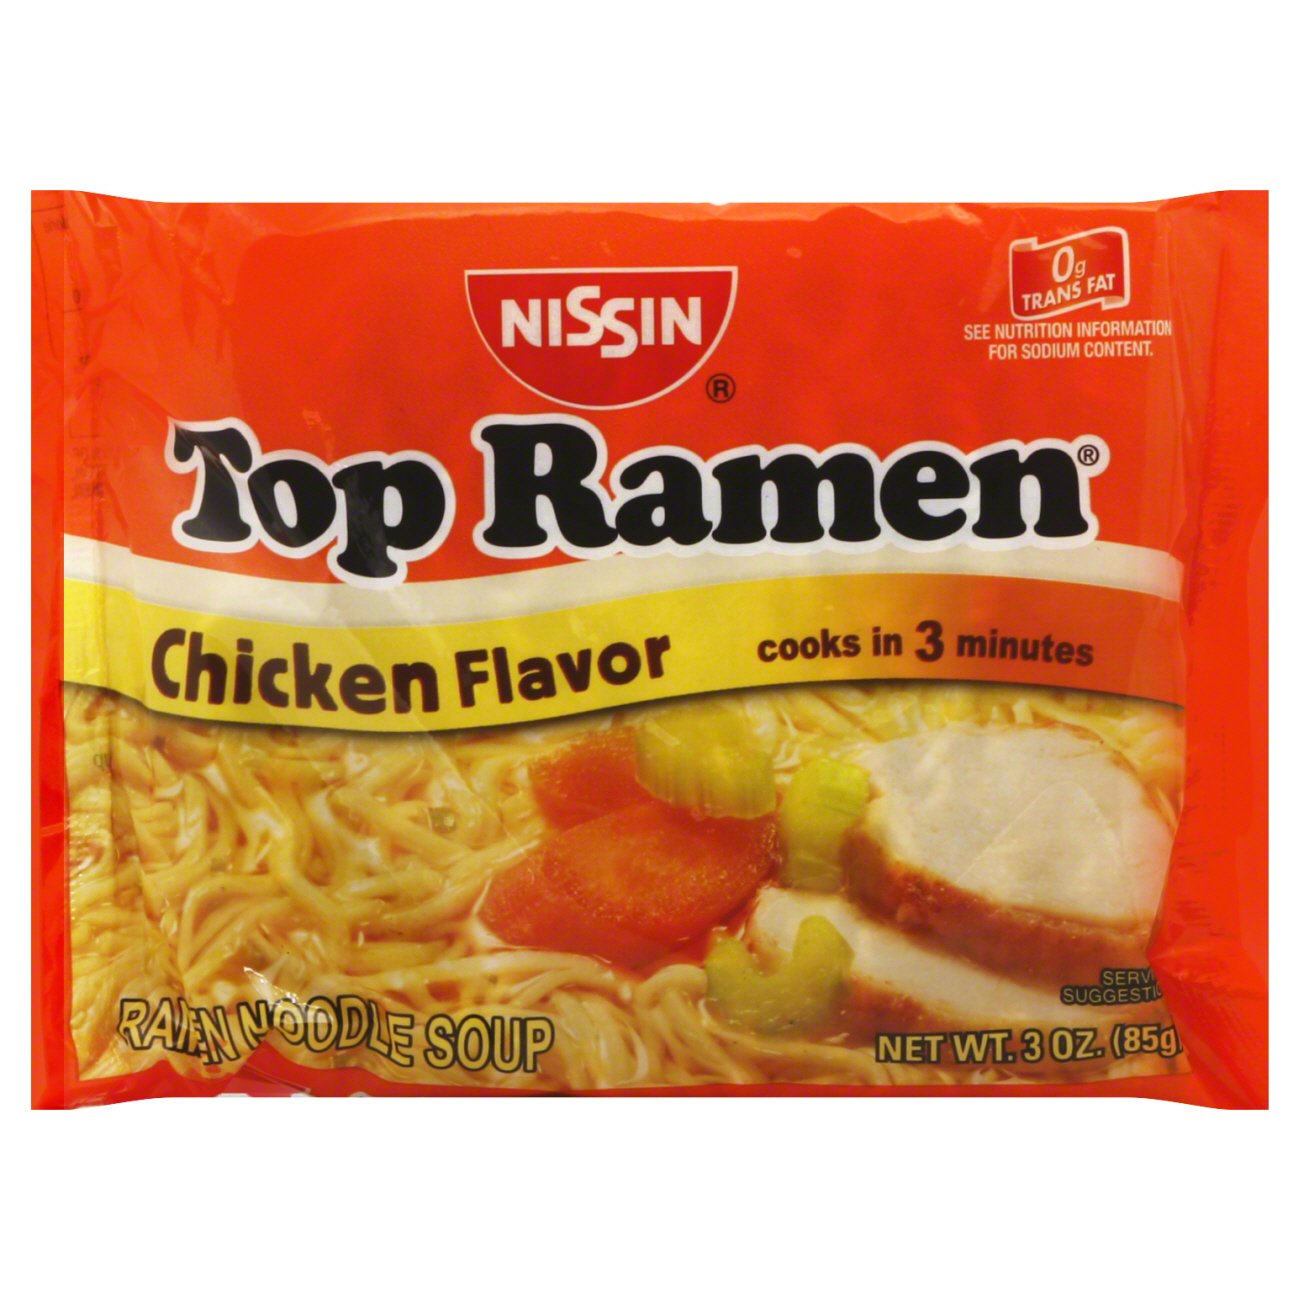 Nissin Top Ramen Chicken Flavor Ramen Noodle Soup Shop Soups Chili At H E B